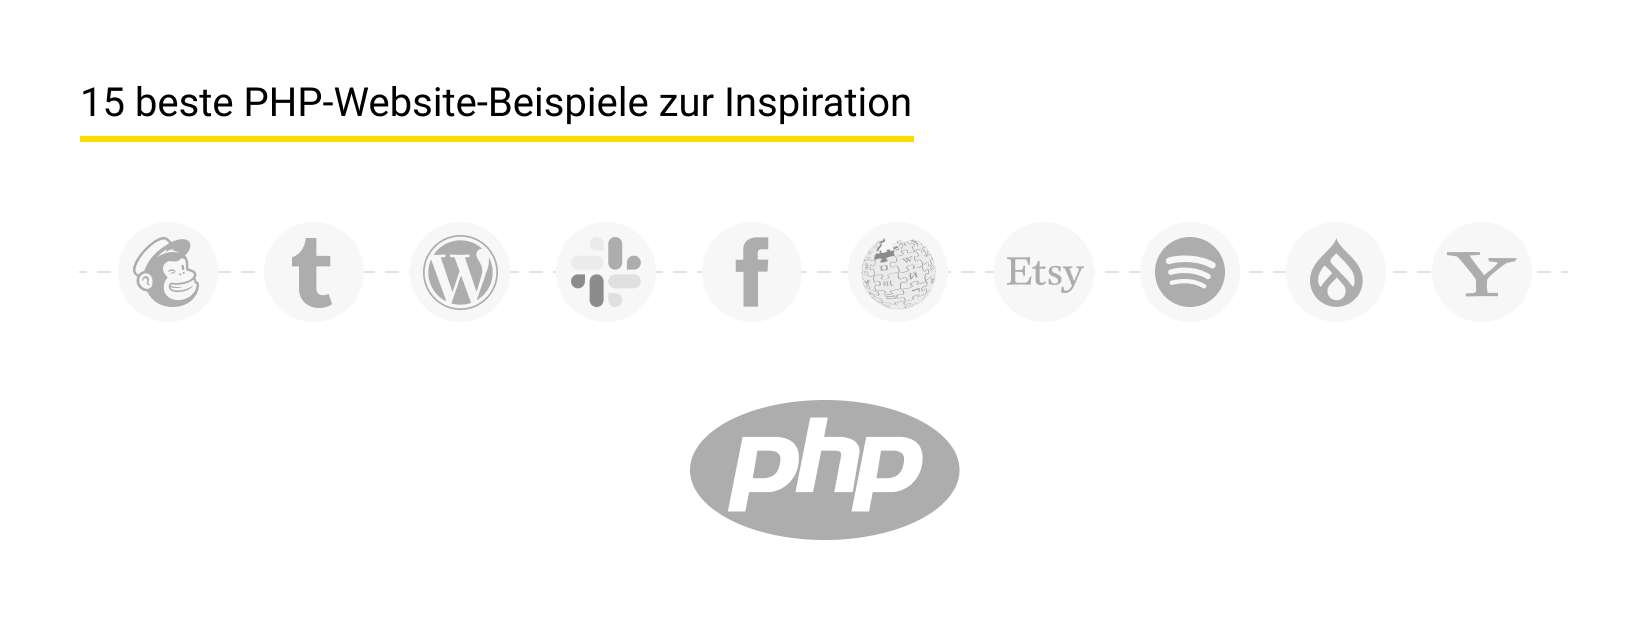 15 besten PHP-Websites-Beispiele inspirieren zur Inspiration